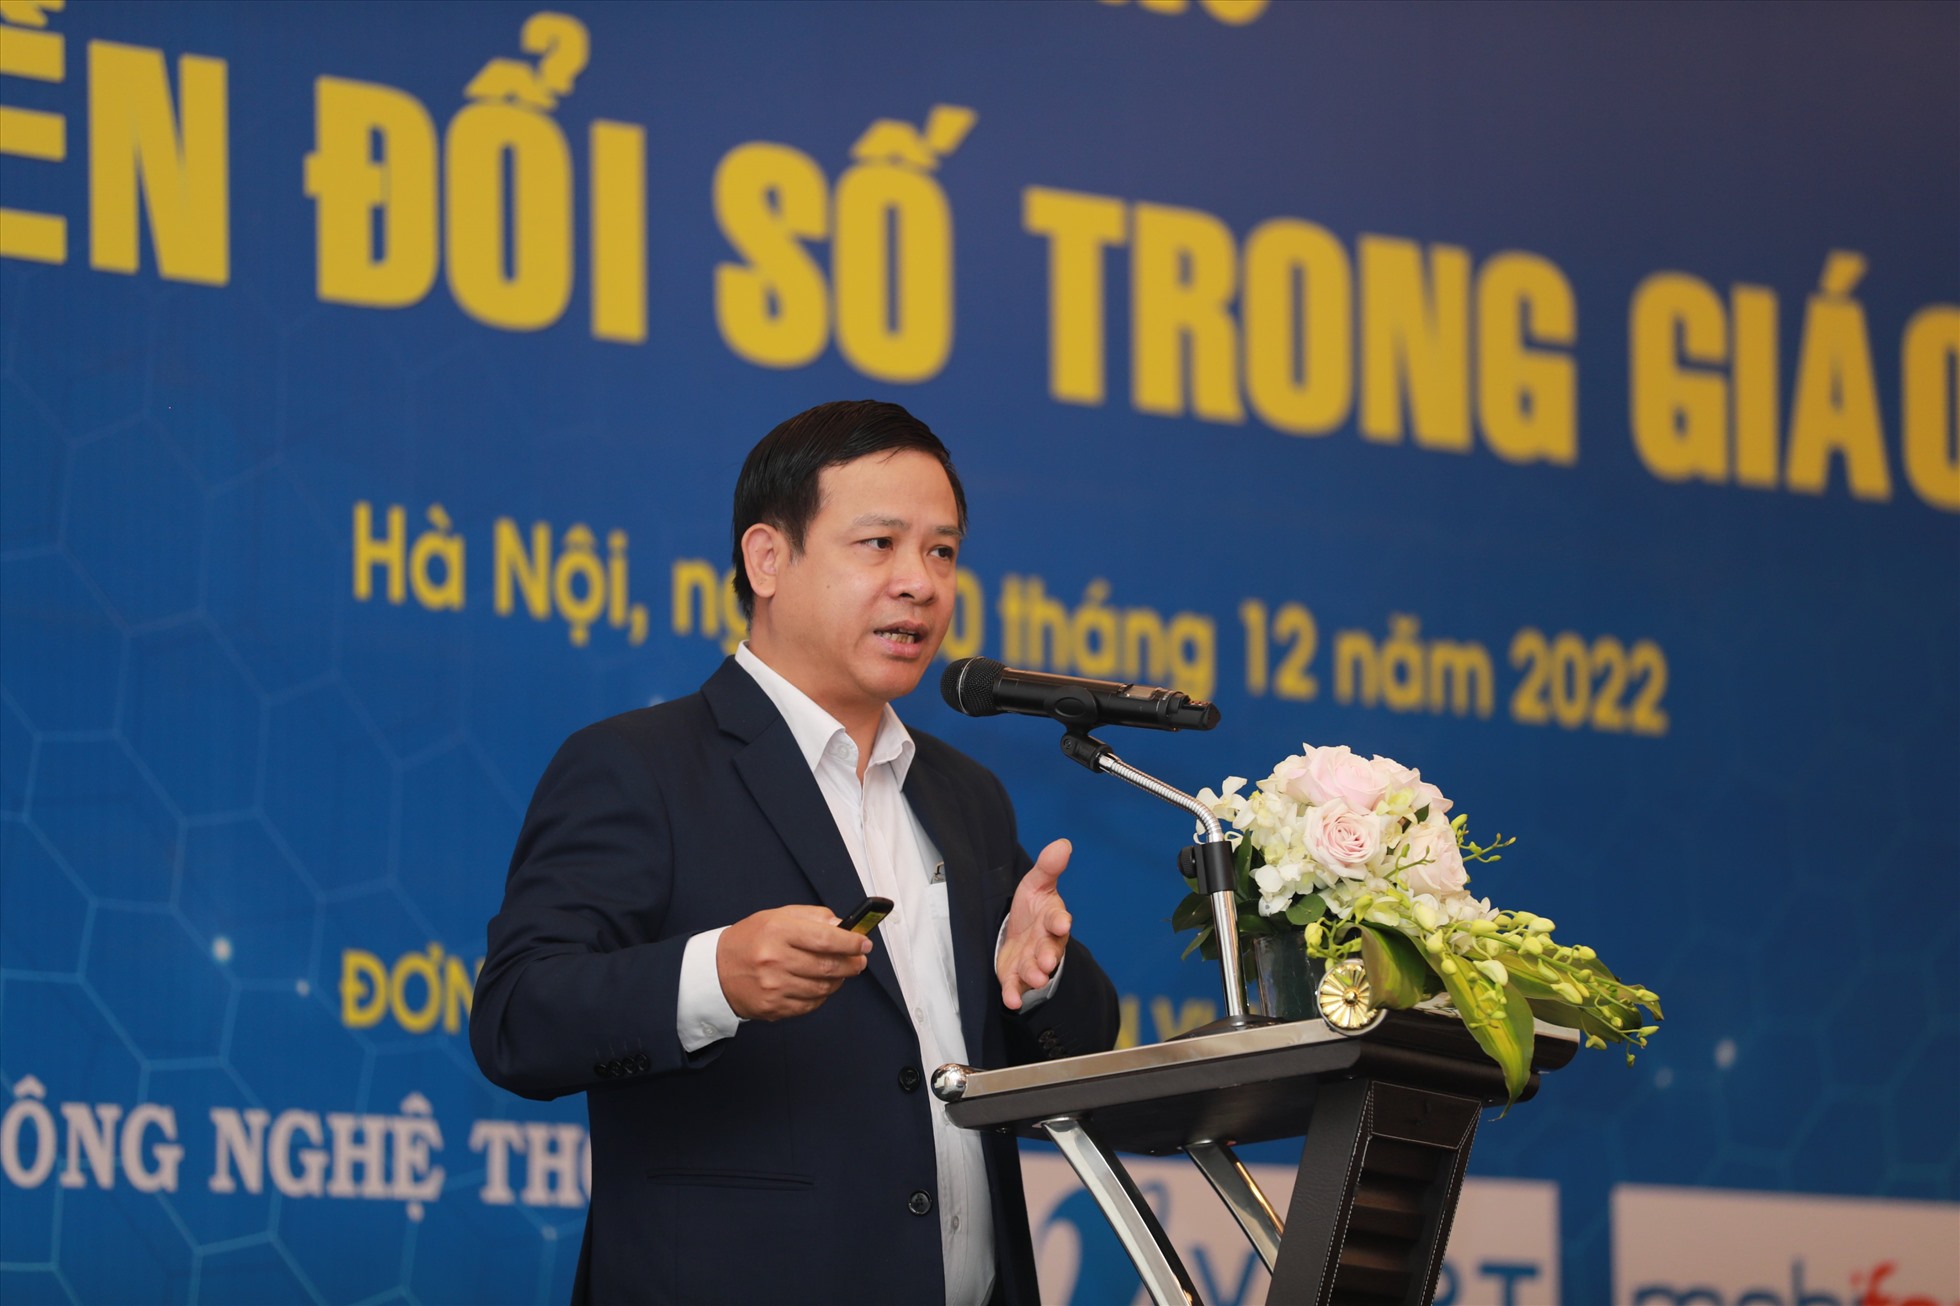 Ông Nguyễn Sơn Hải, Cục trưởng Cục Công nghệ thông tin (Bộ GDĐT) phát biểu tại hội thảo